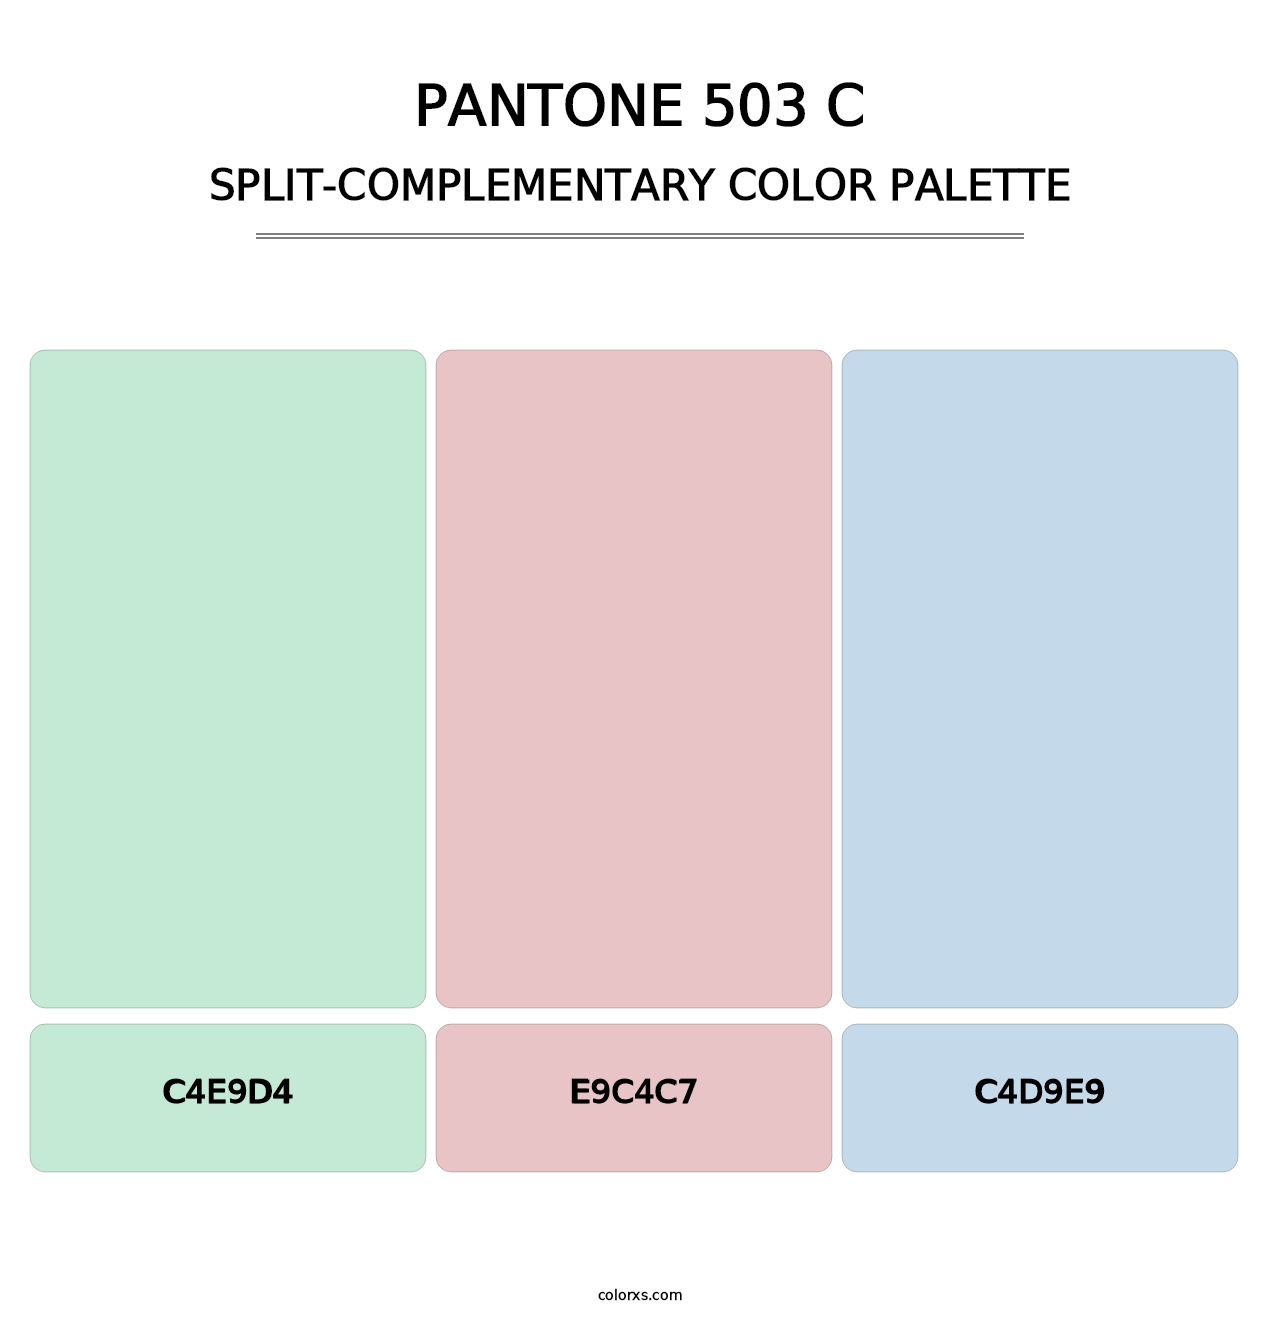 PANTONE 503 C - Split-Complementary Color Palette